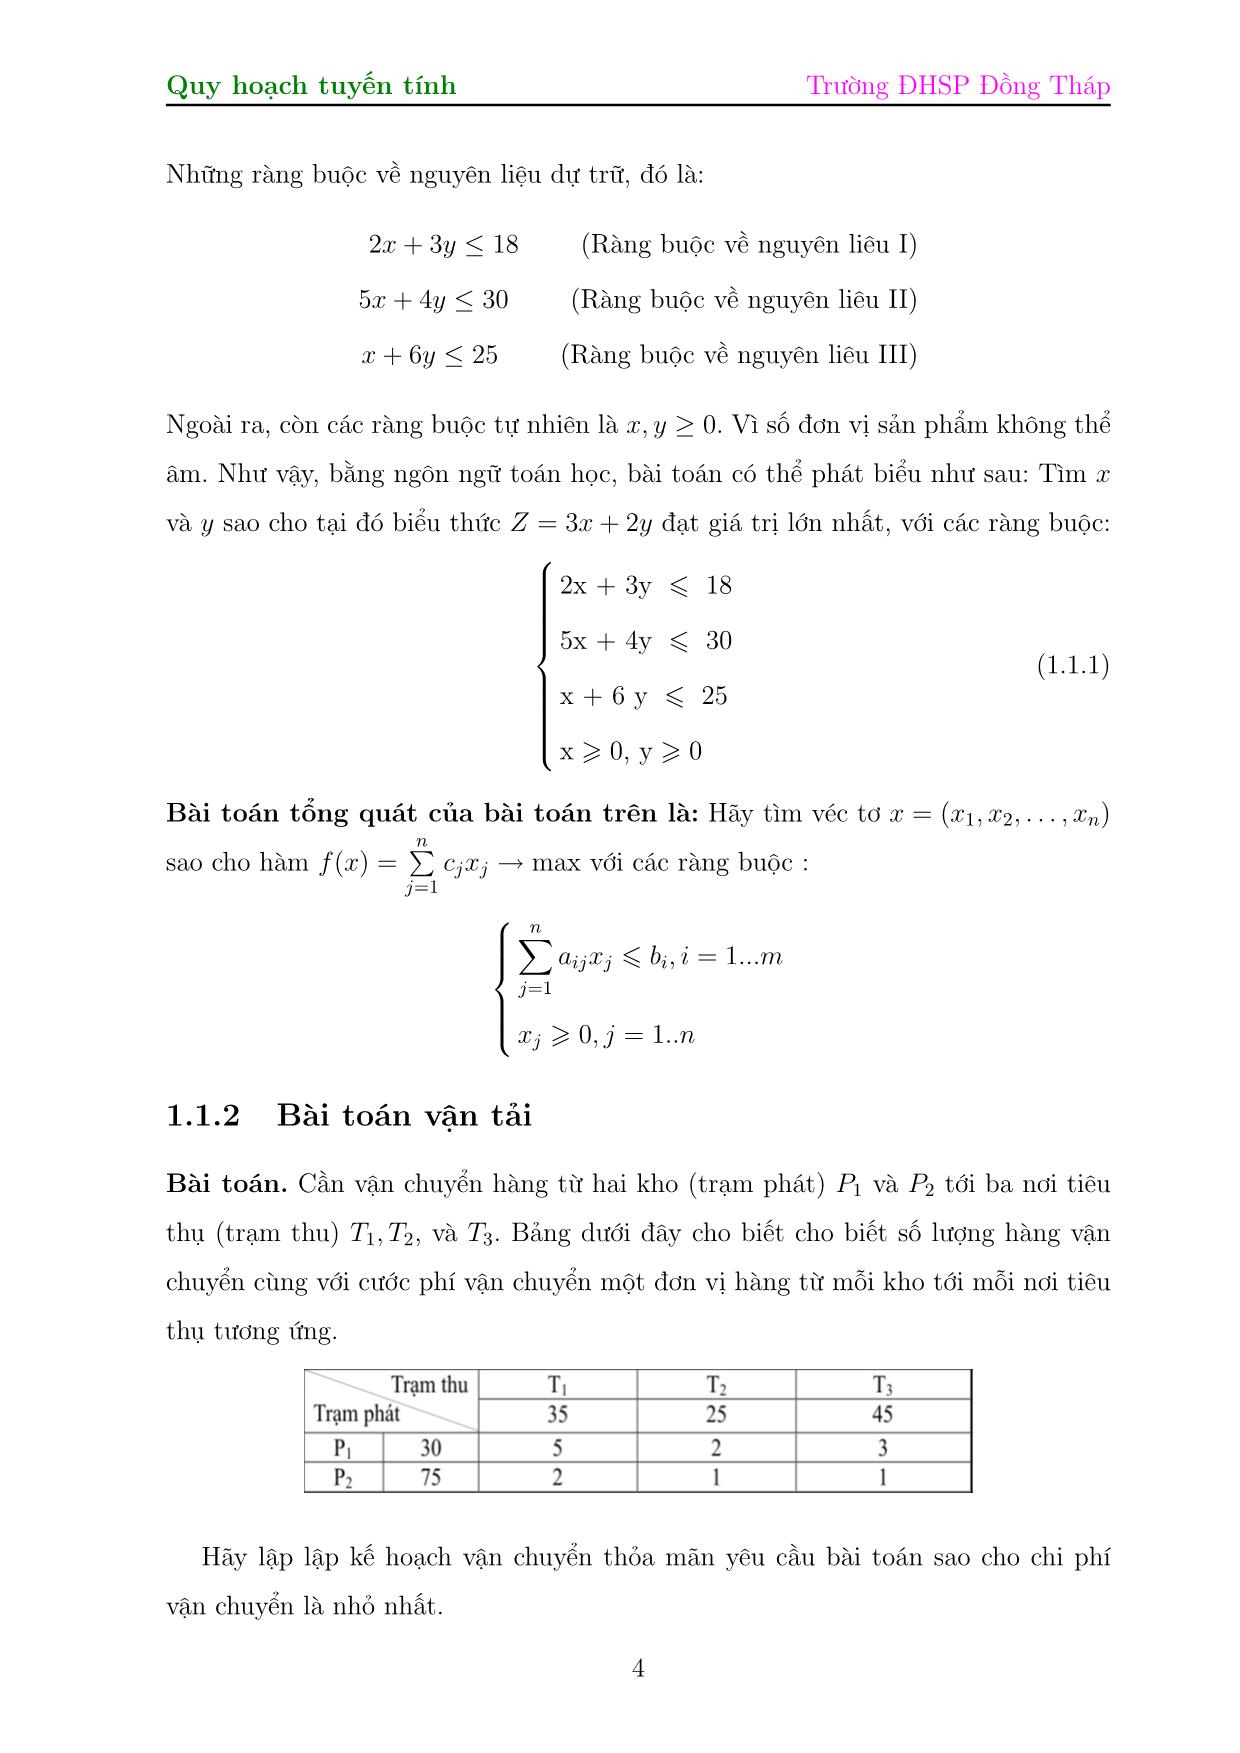 Bài giảng Bài toán quy hoạch tuyến tính trang 4